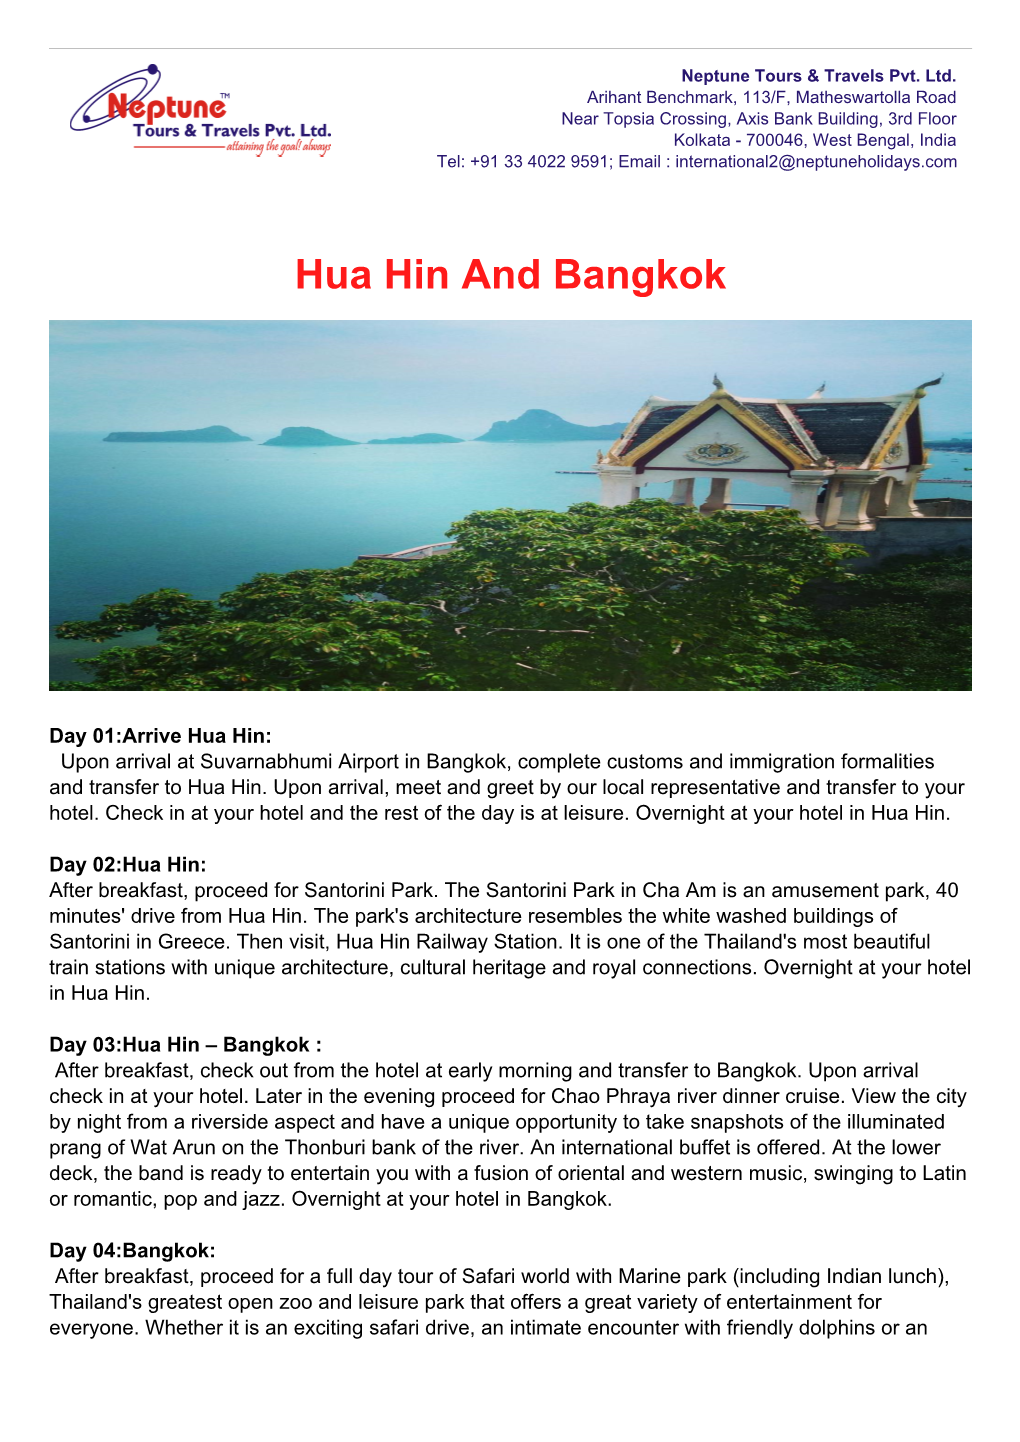 Hua Hin and Bangkok